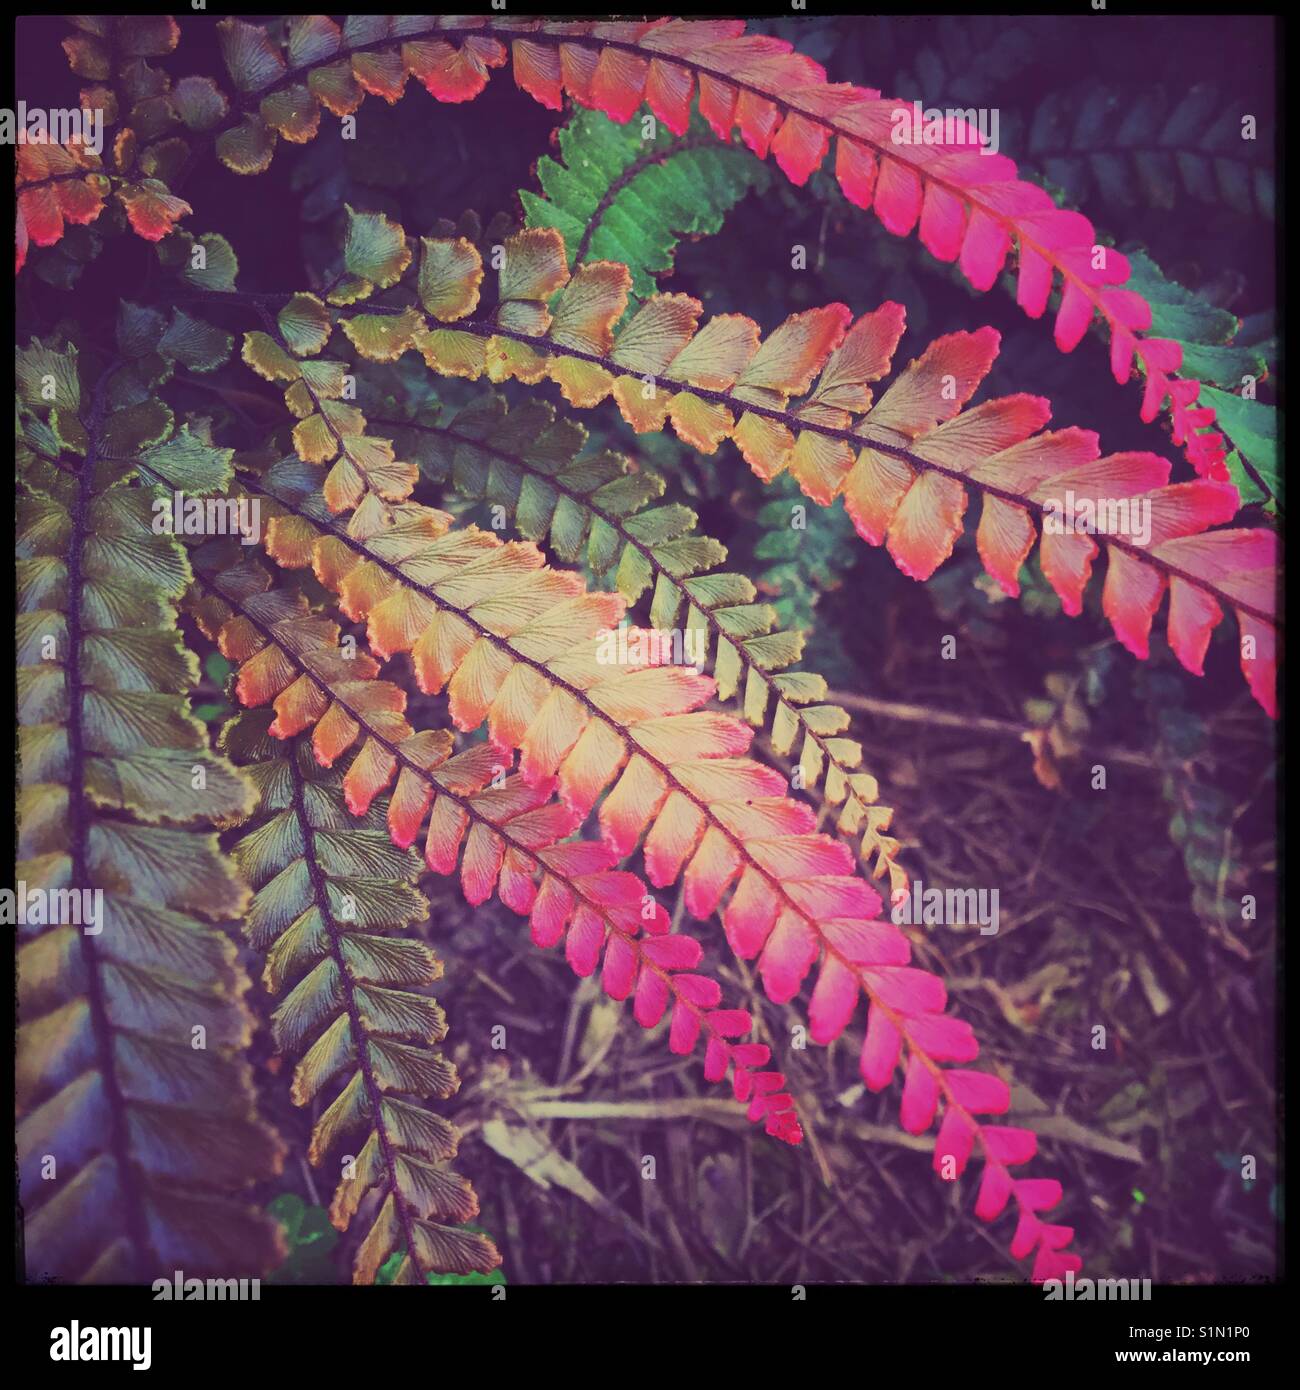 Des mélanges de natures 'feuilles aux couleurs multiples, l'iPhone photo avec filtres améliorés Banque D'Images